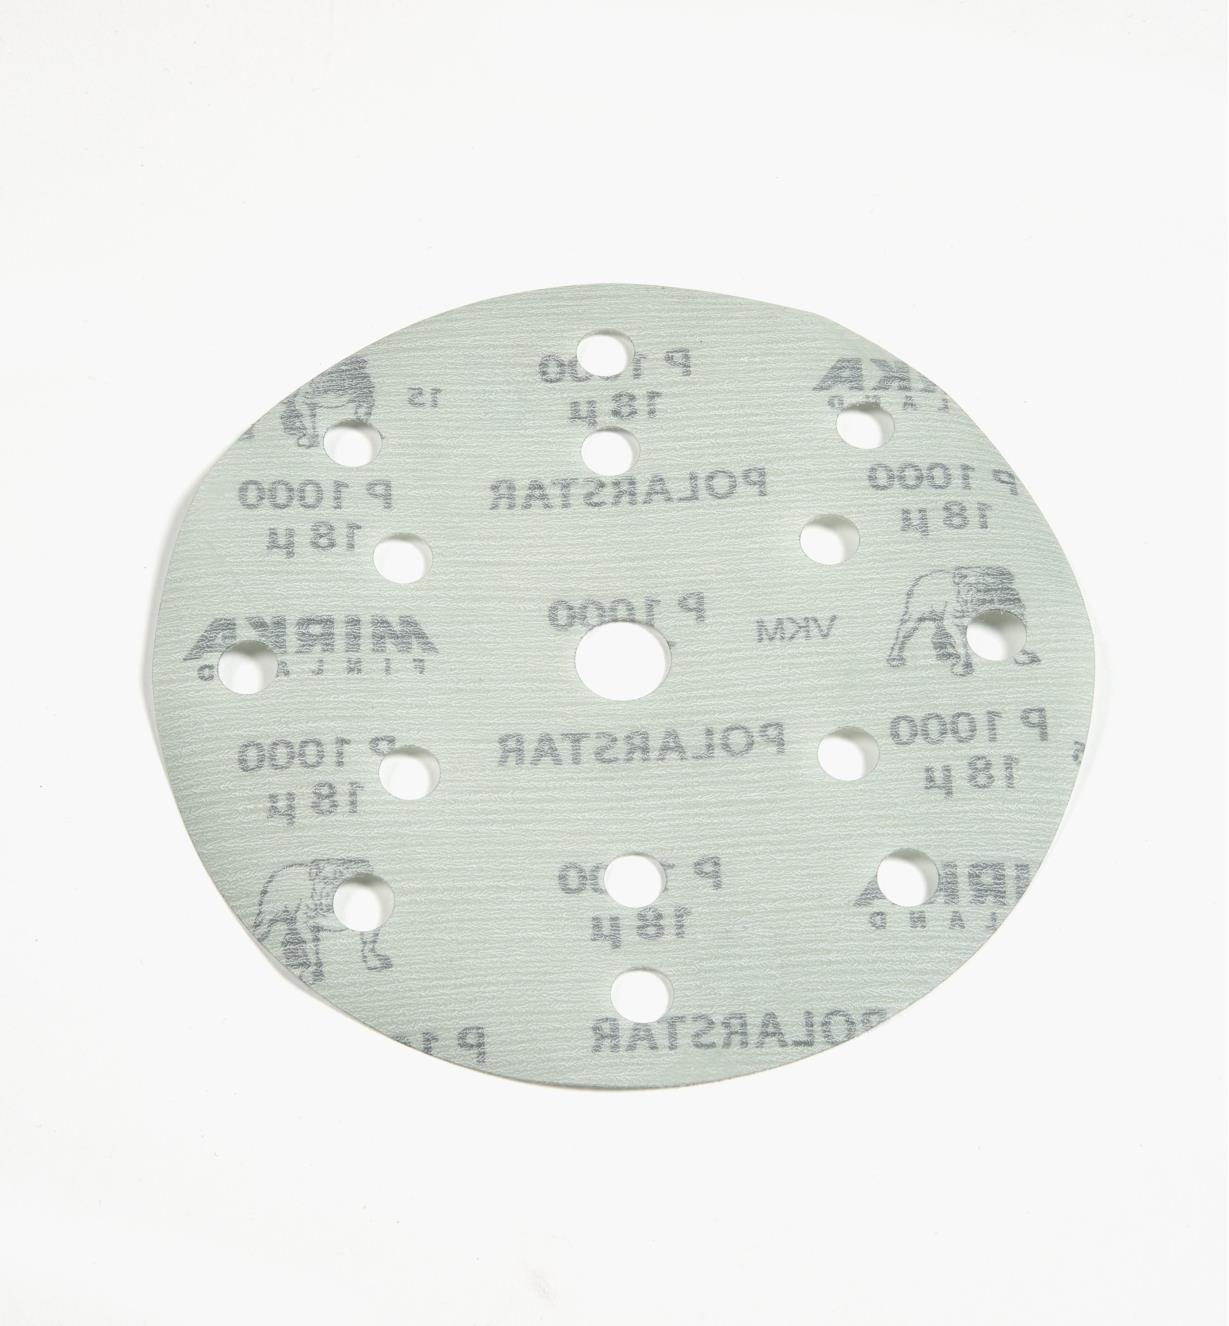 08K2182 - 1000x 6" Polarstar 15-Hole Film-Backed Grip Disc, ea.